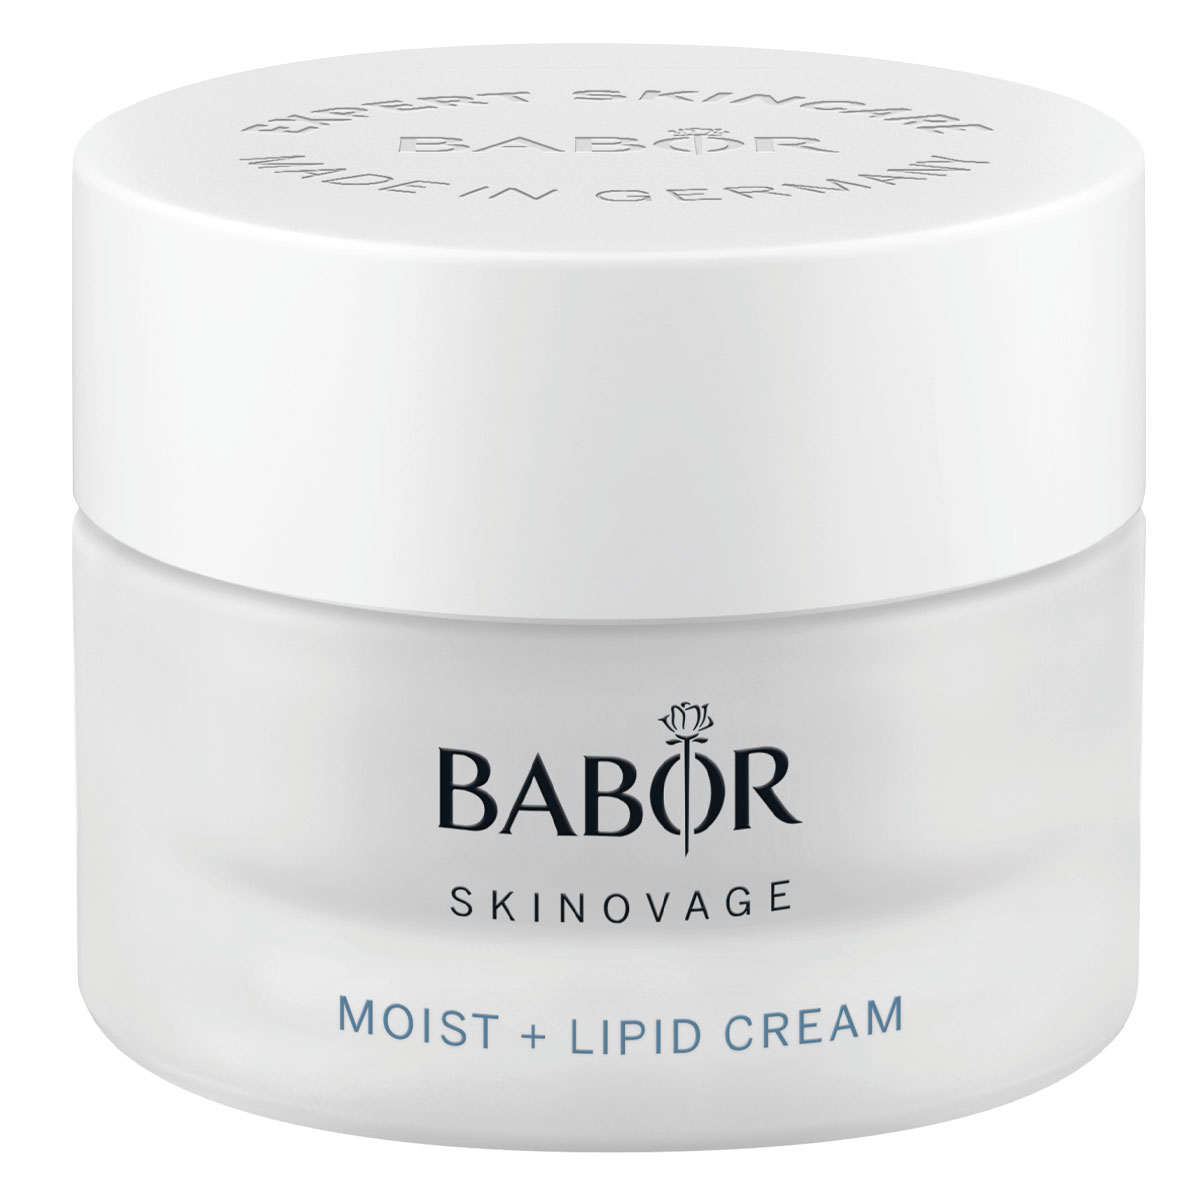 BABOR Skinovage Moist + Lipid Cream 50ml - интернет-магазин профессиональной косметики Spadream, изображение 41719